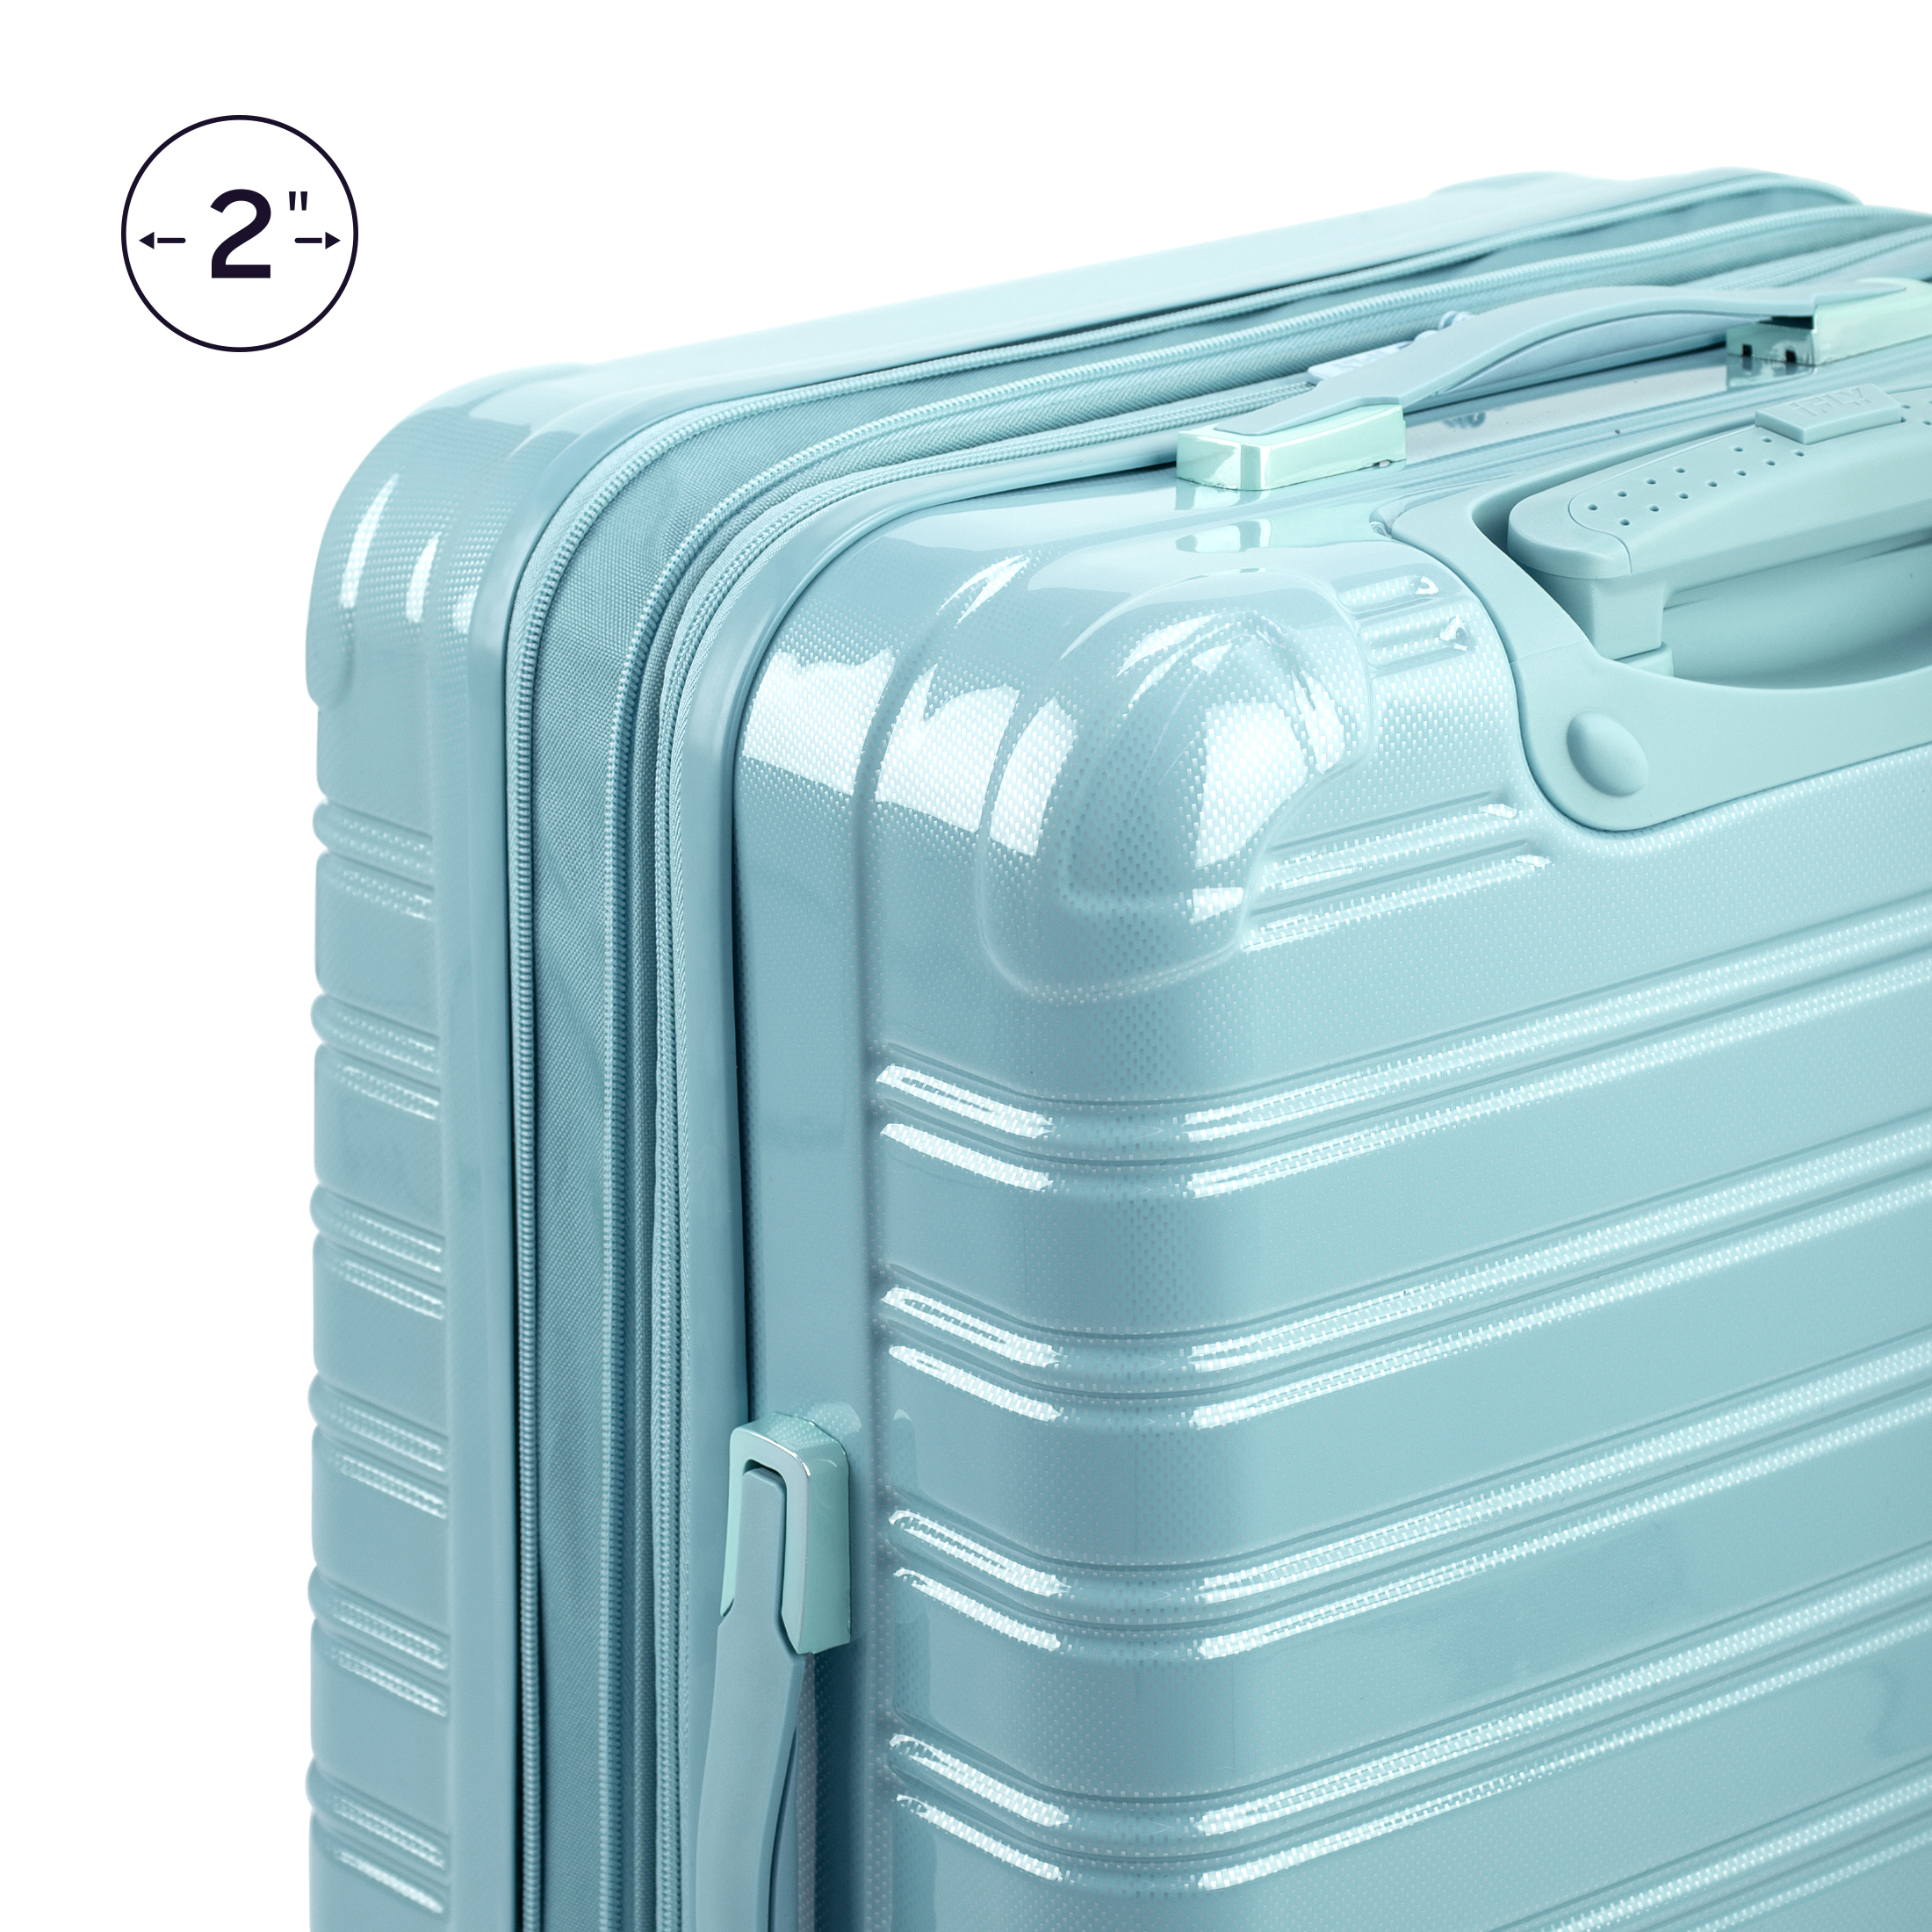 iFLY Hardside Luggage Fibertech 20", Sky - image 5 of 9